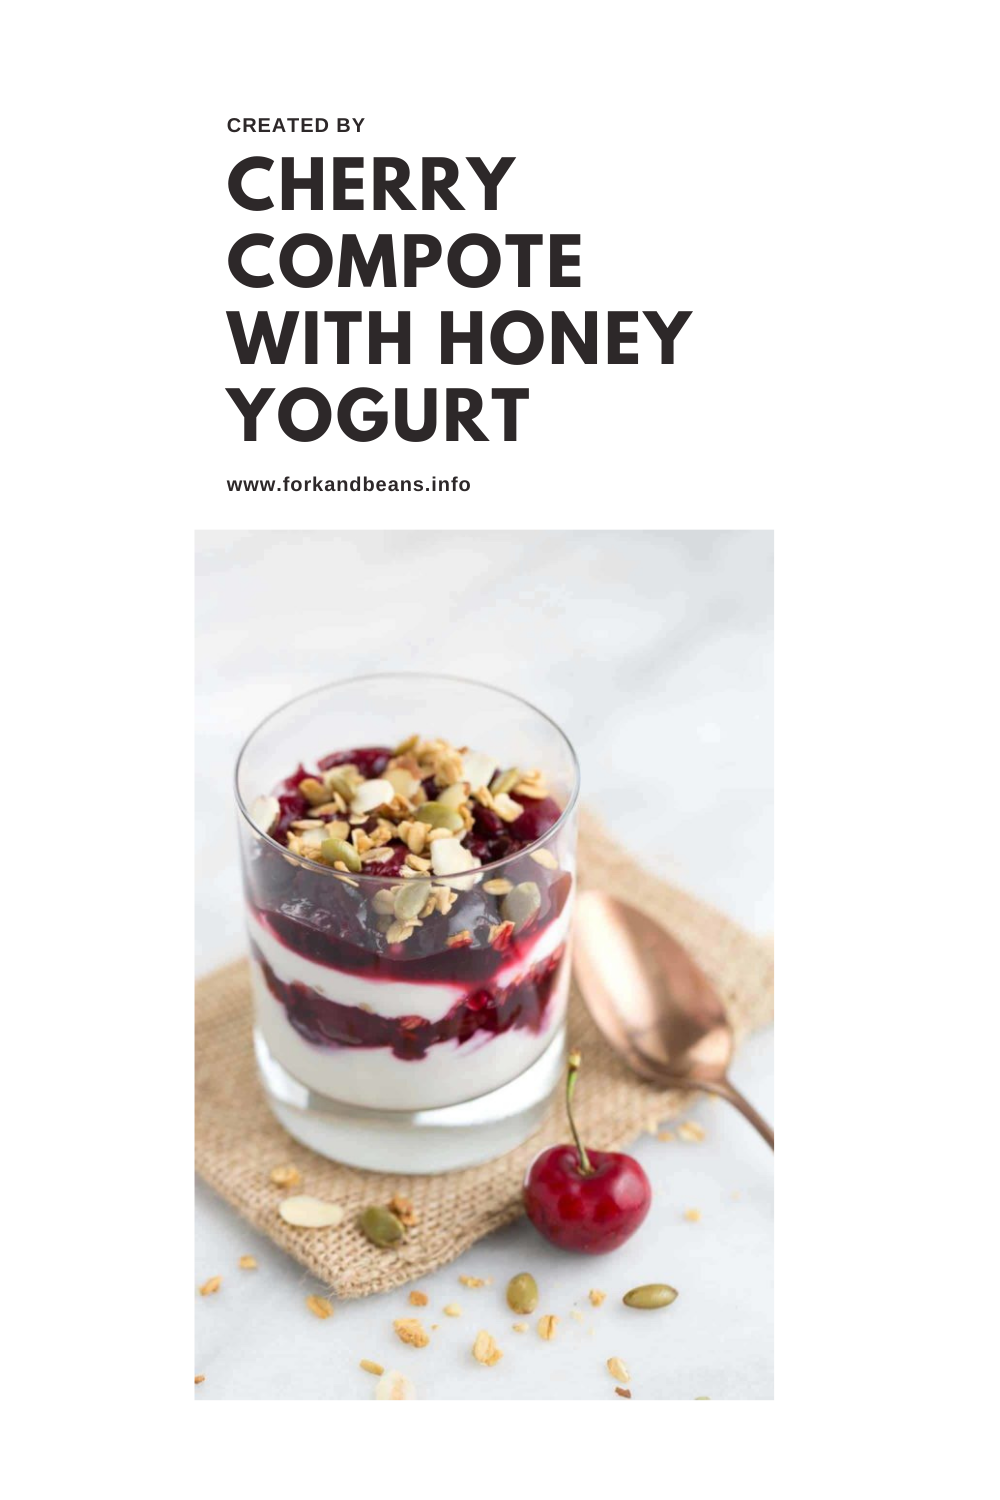 Yogurt Parfait with Cherries